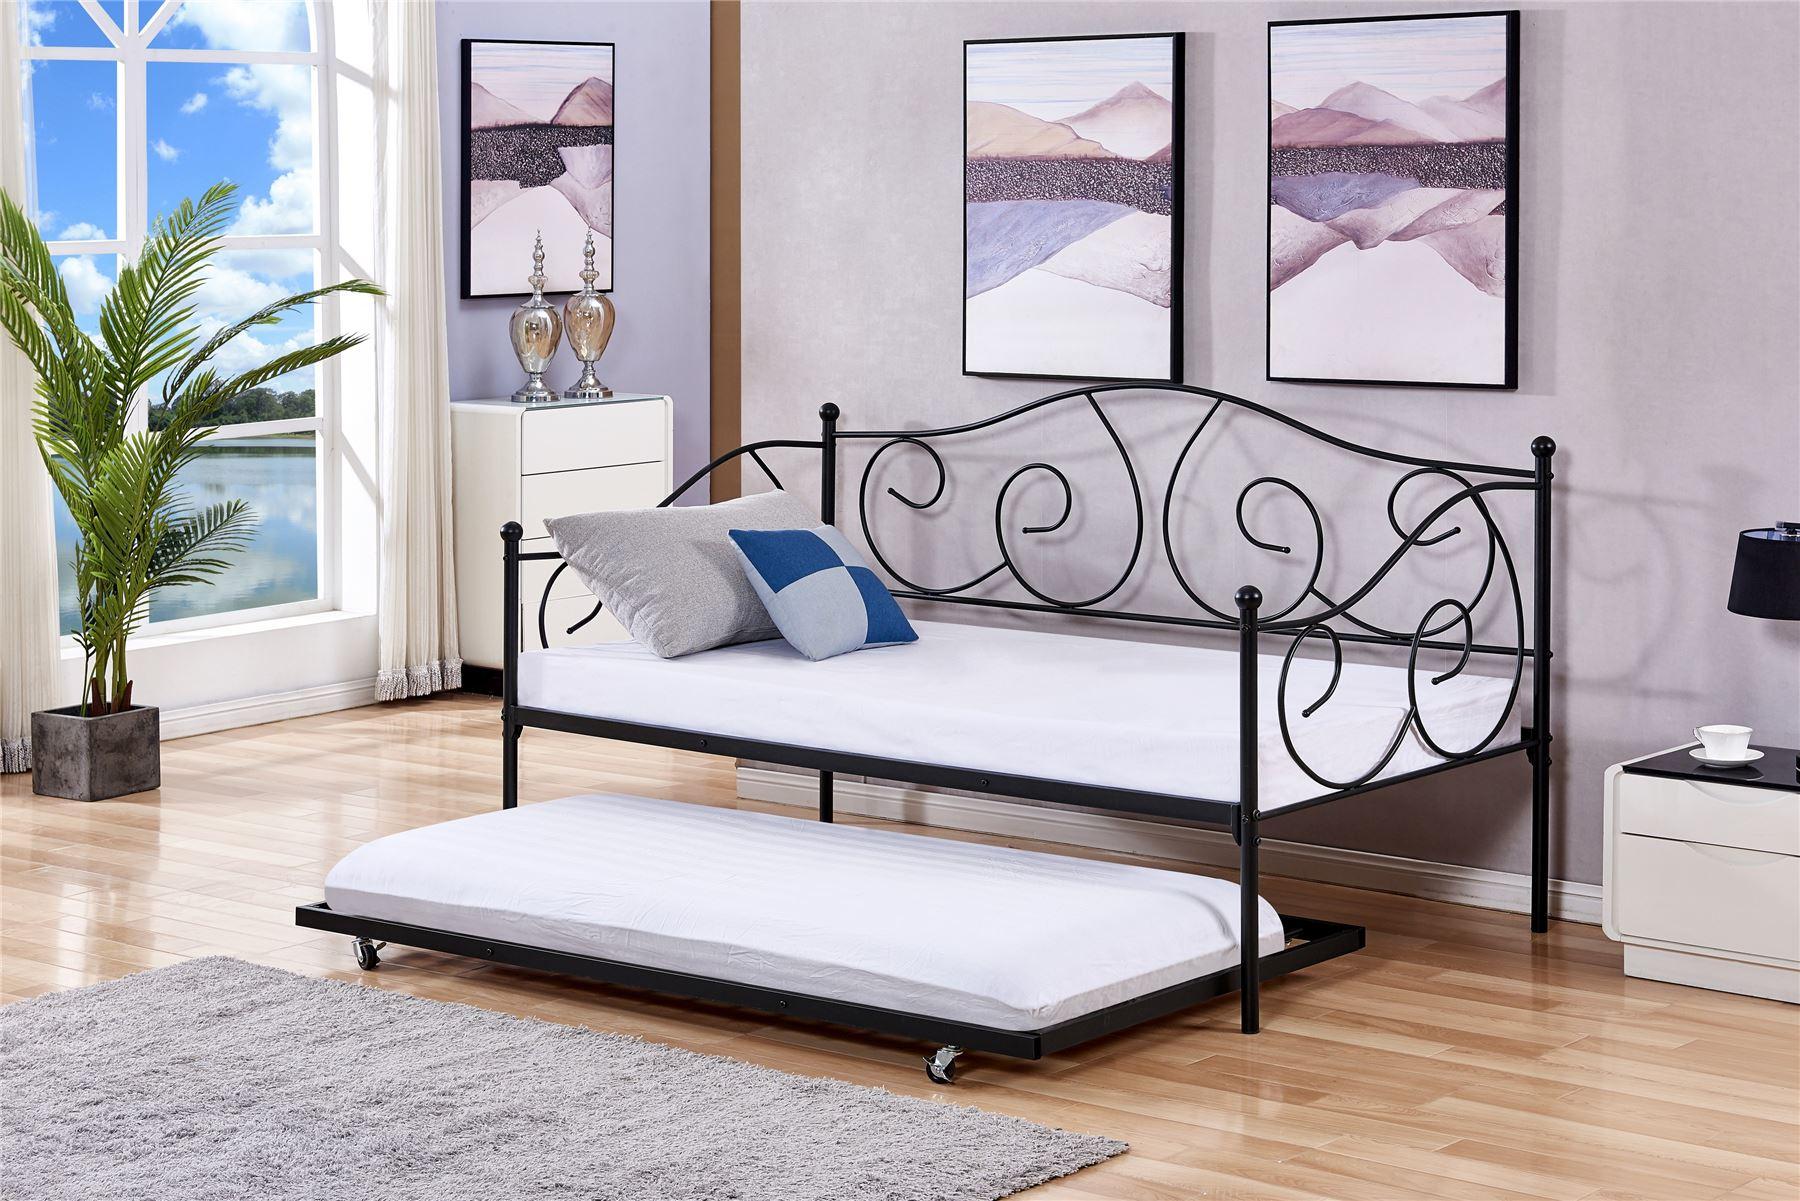 trimble bed frame snd mattress